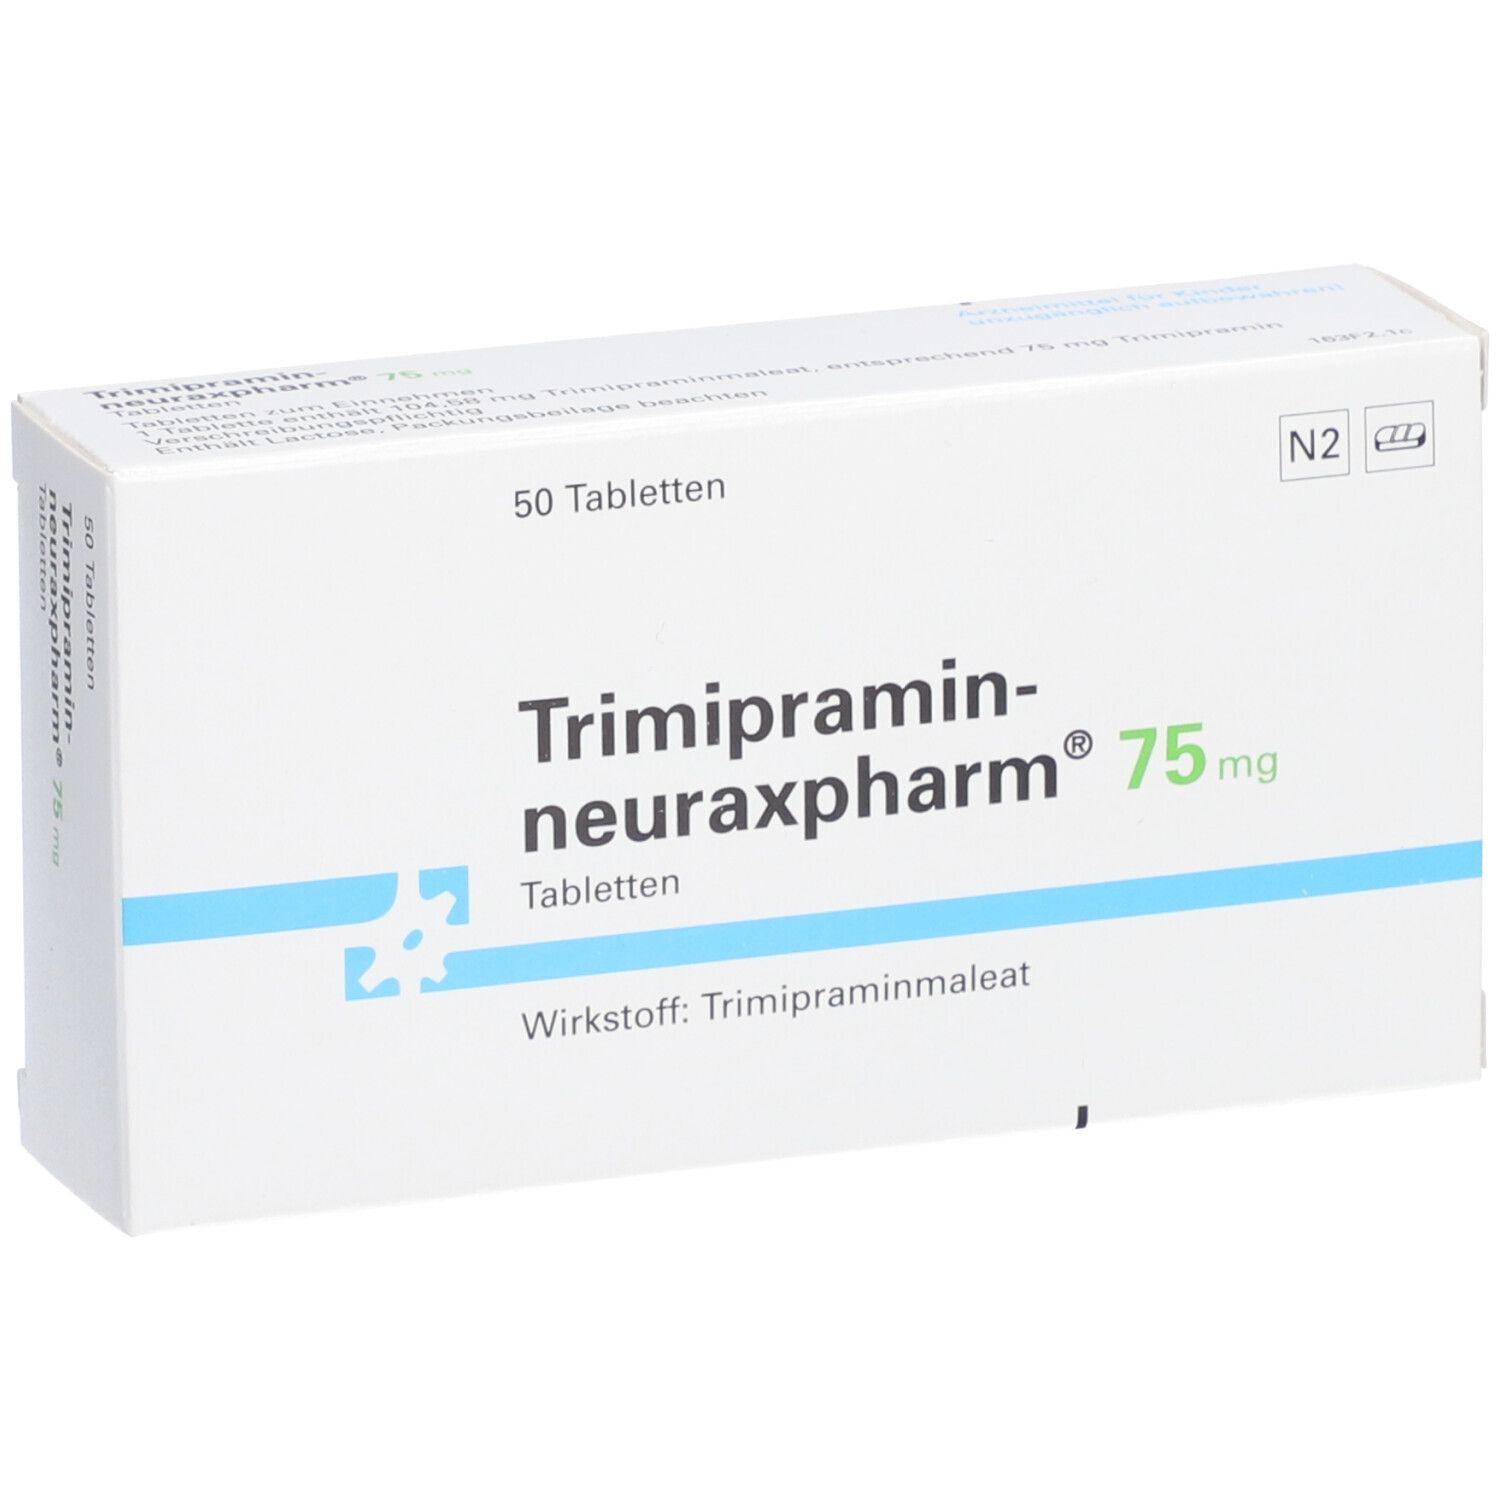 Trimipramin-neuraxpharm® 75 mg